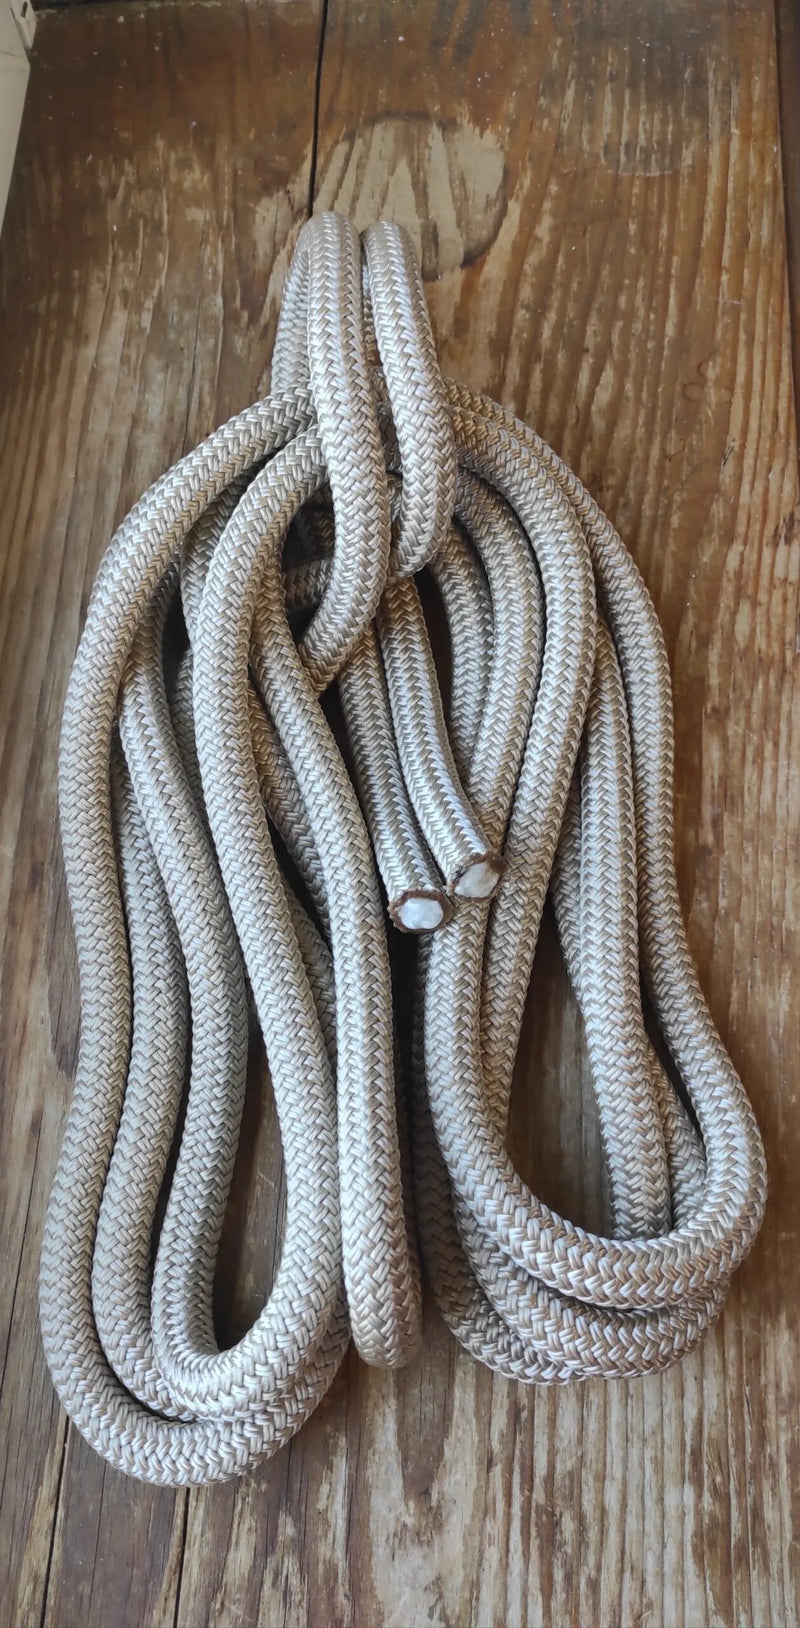 Longe éthologique 3m70 corde et cuir personnalisable